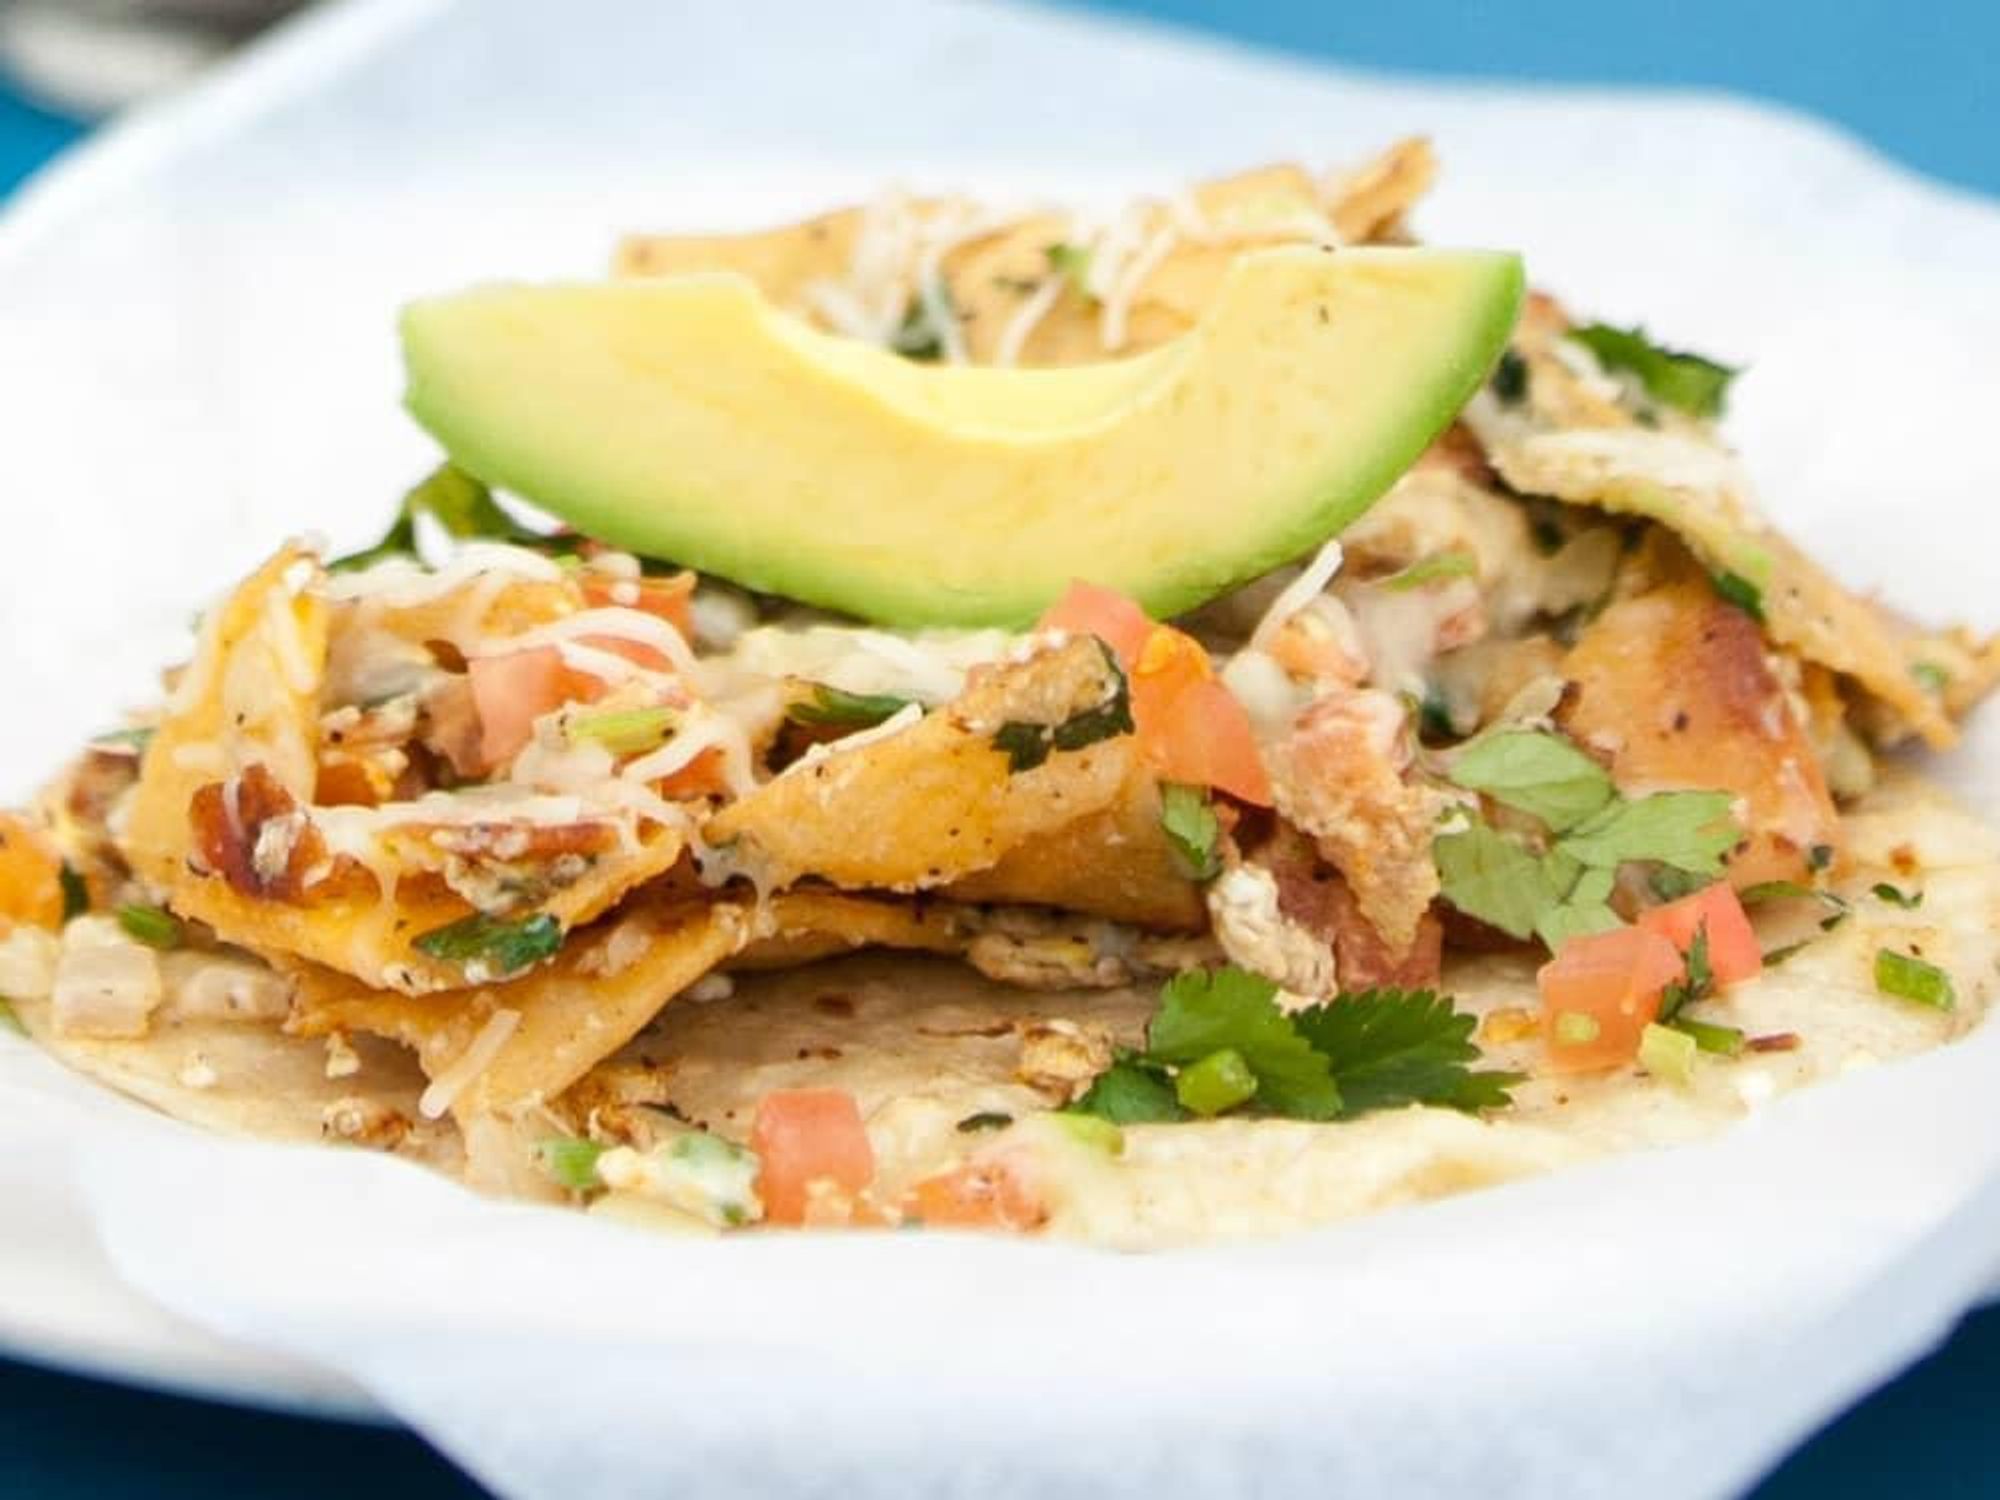 Geoffrey Zakarian's Breakfast Street Tacos Recipe